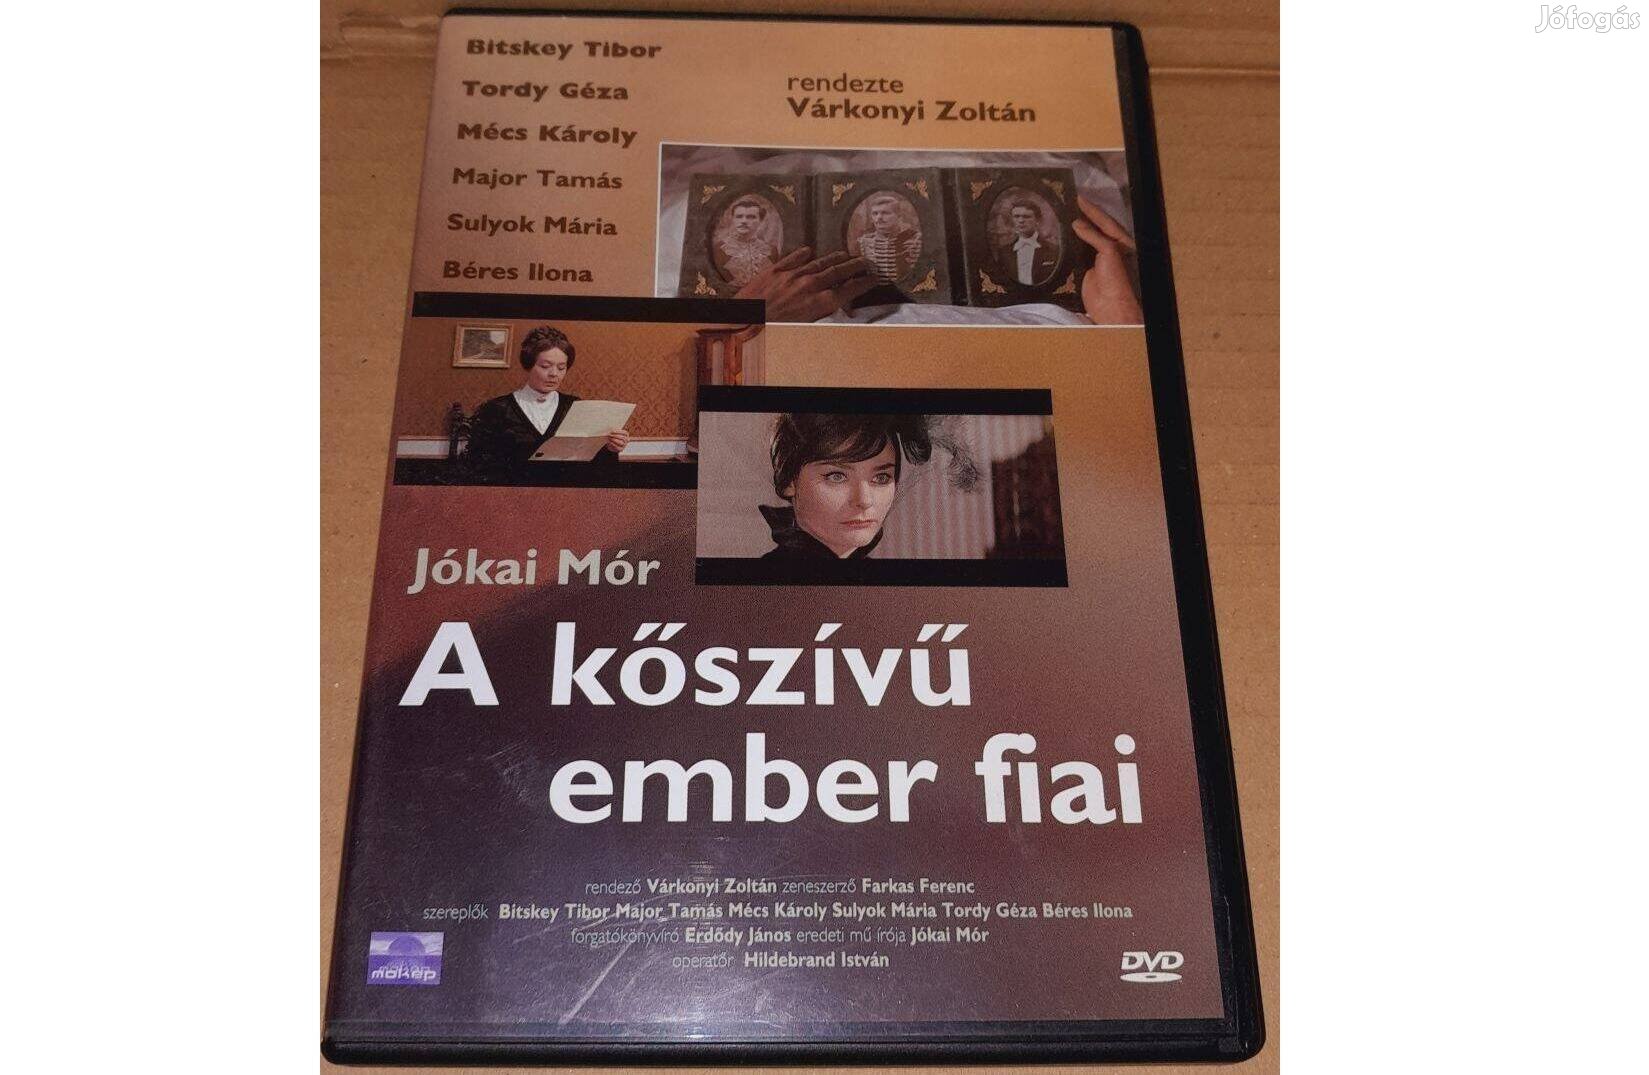 A kőszívű ember fiai DVD (1964) Várkonyi Zoltán filmje (Bitskey Tibor)